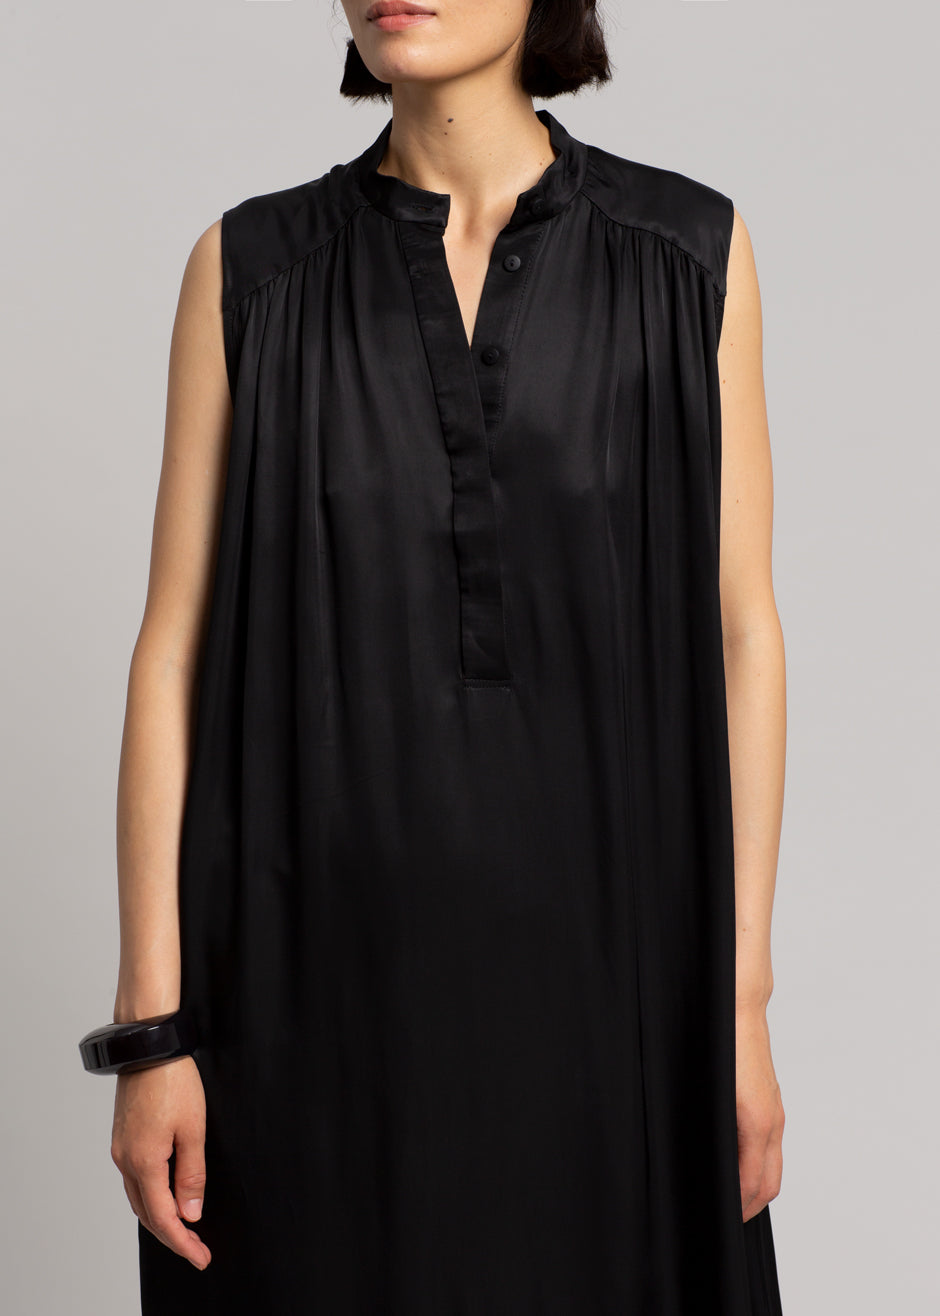 MATIN Sleeveless Button-up Dress - Black - 6